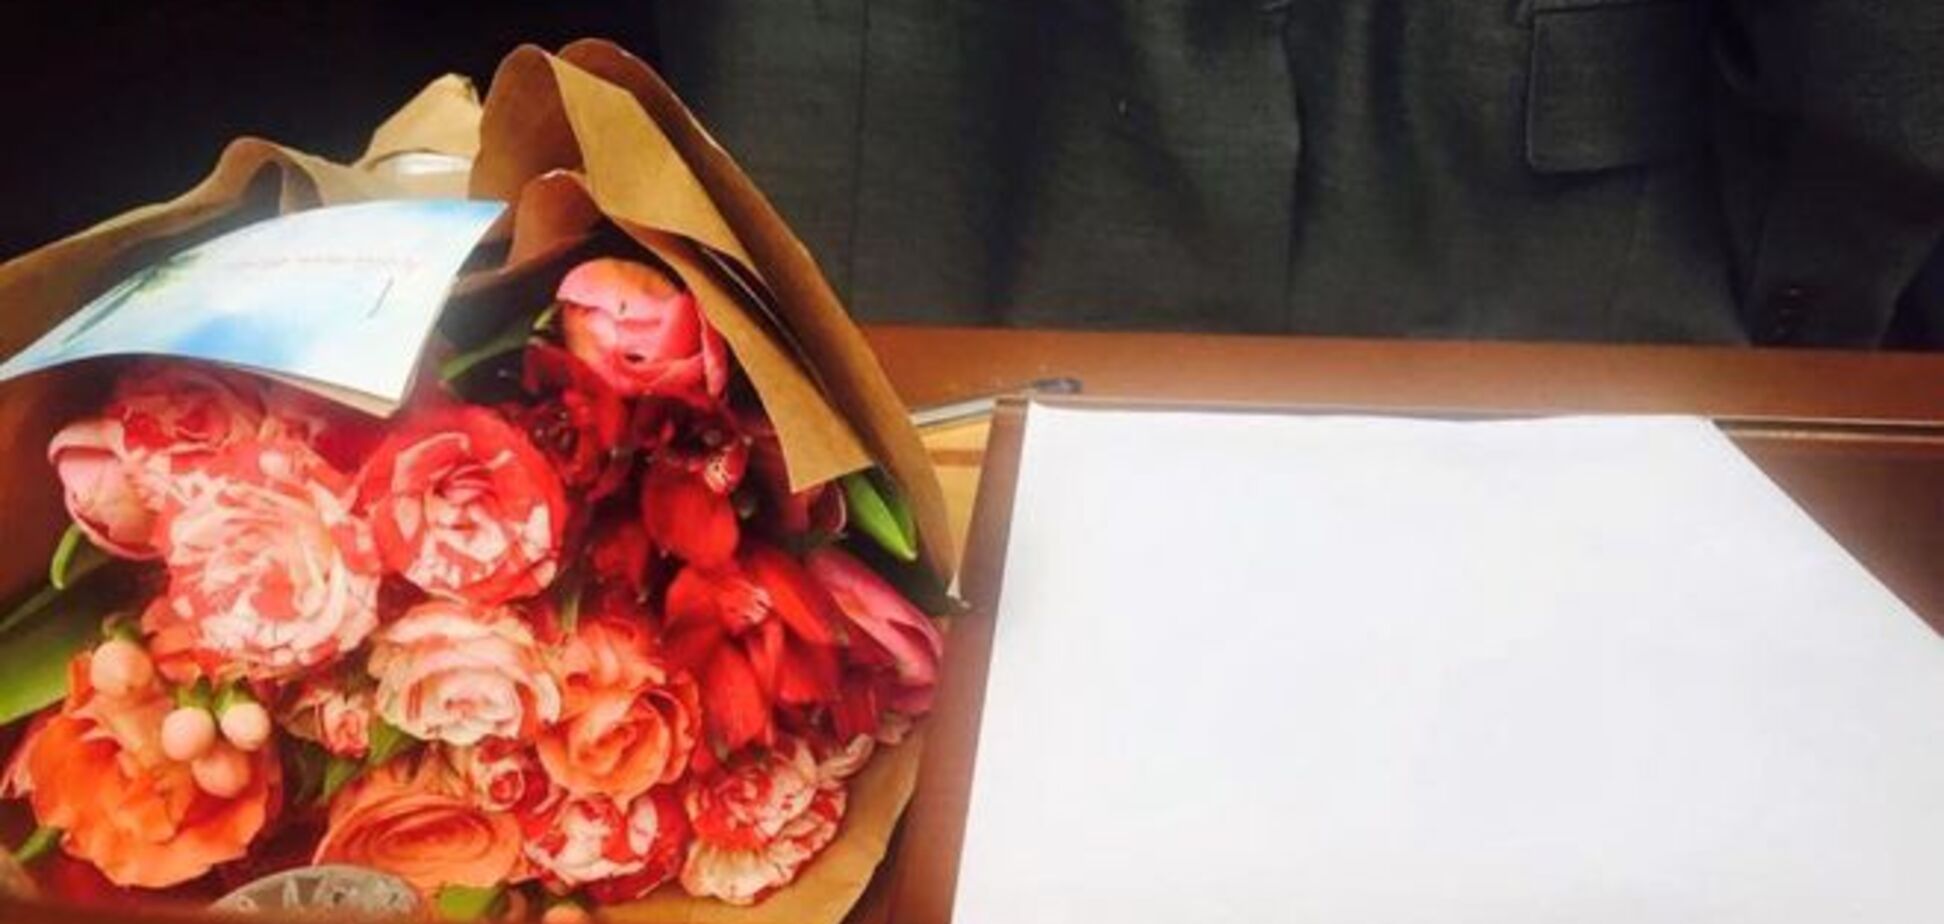 Гонтаревой вручили цветы и бумагу для заявления об отставке: 'Валерия, подарите людям праздник'